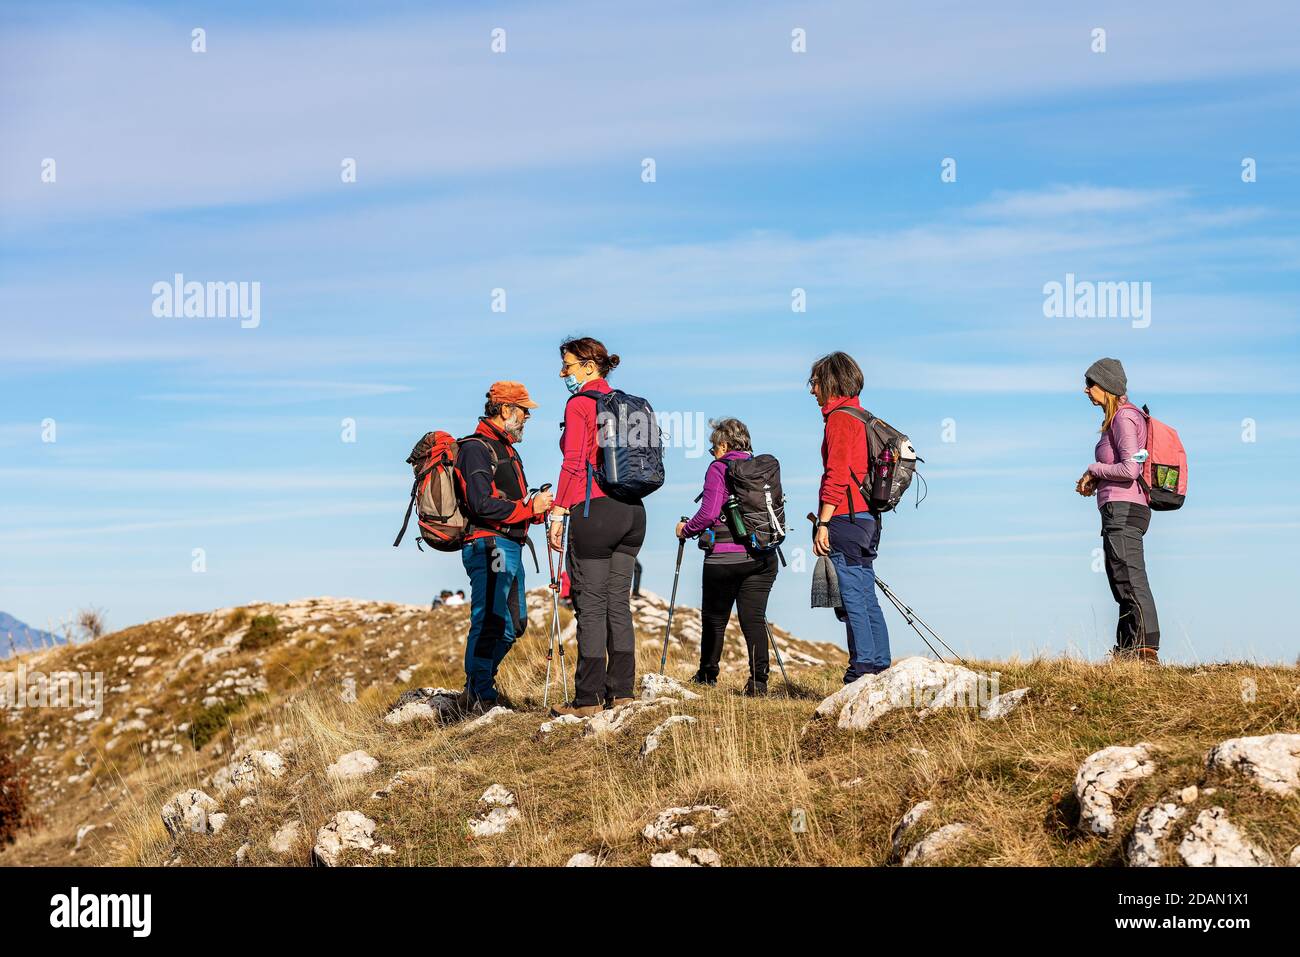 Group of seniors and adults hiking on the Lessinia plateau near the peak of Corno d'Aquilio, European Alps, Verona province, Veneto, Italy, Europe. Stock Photo